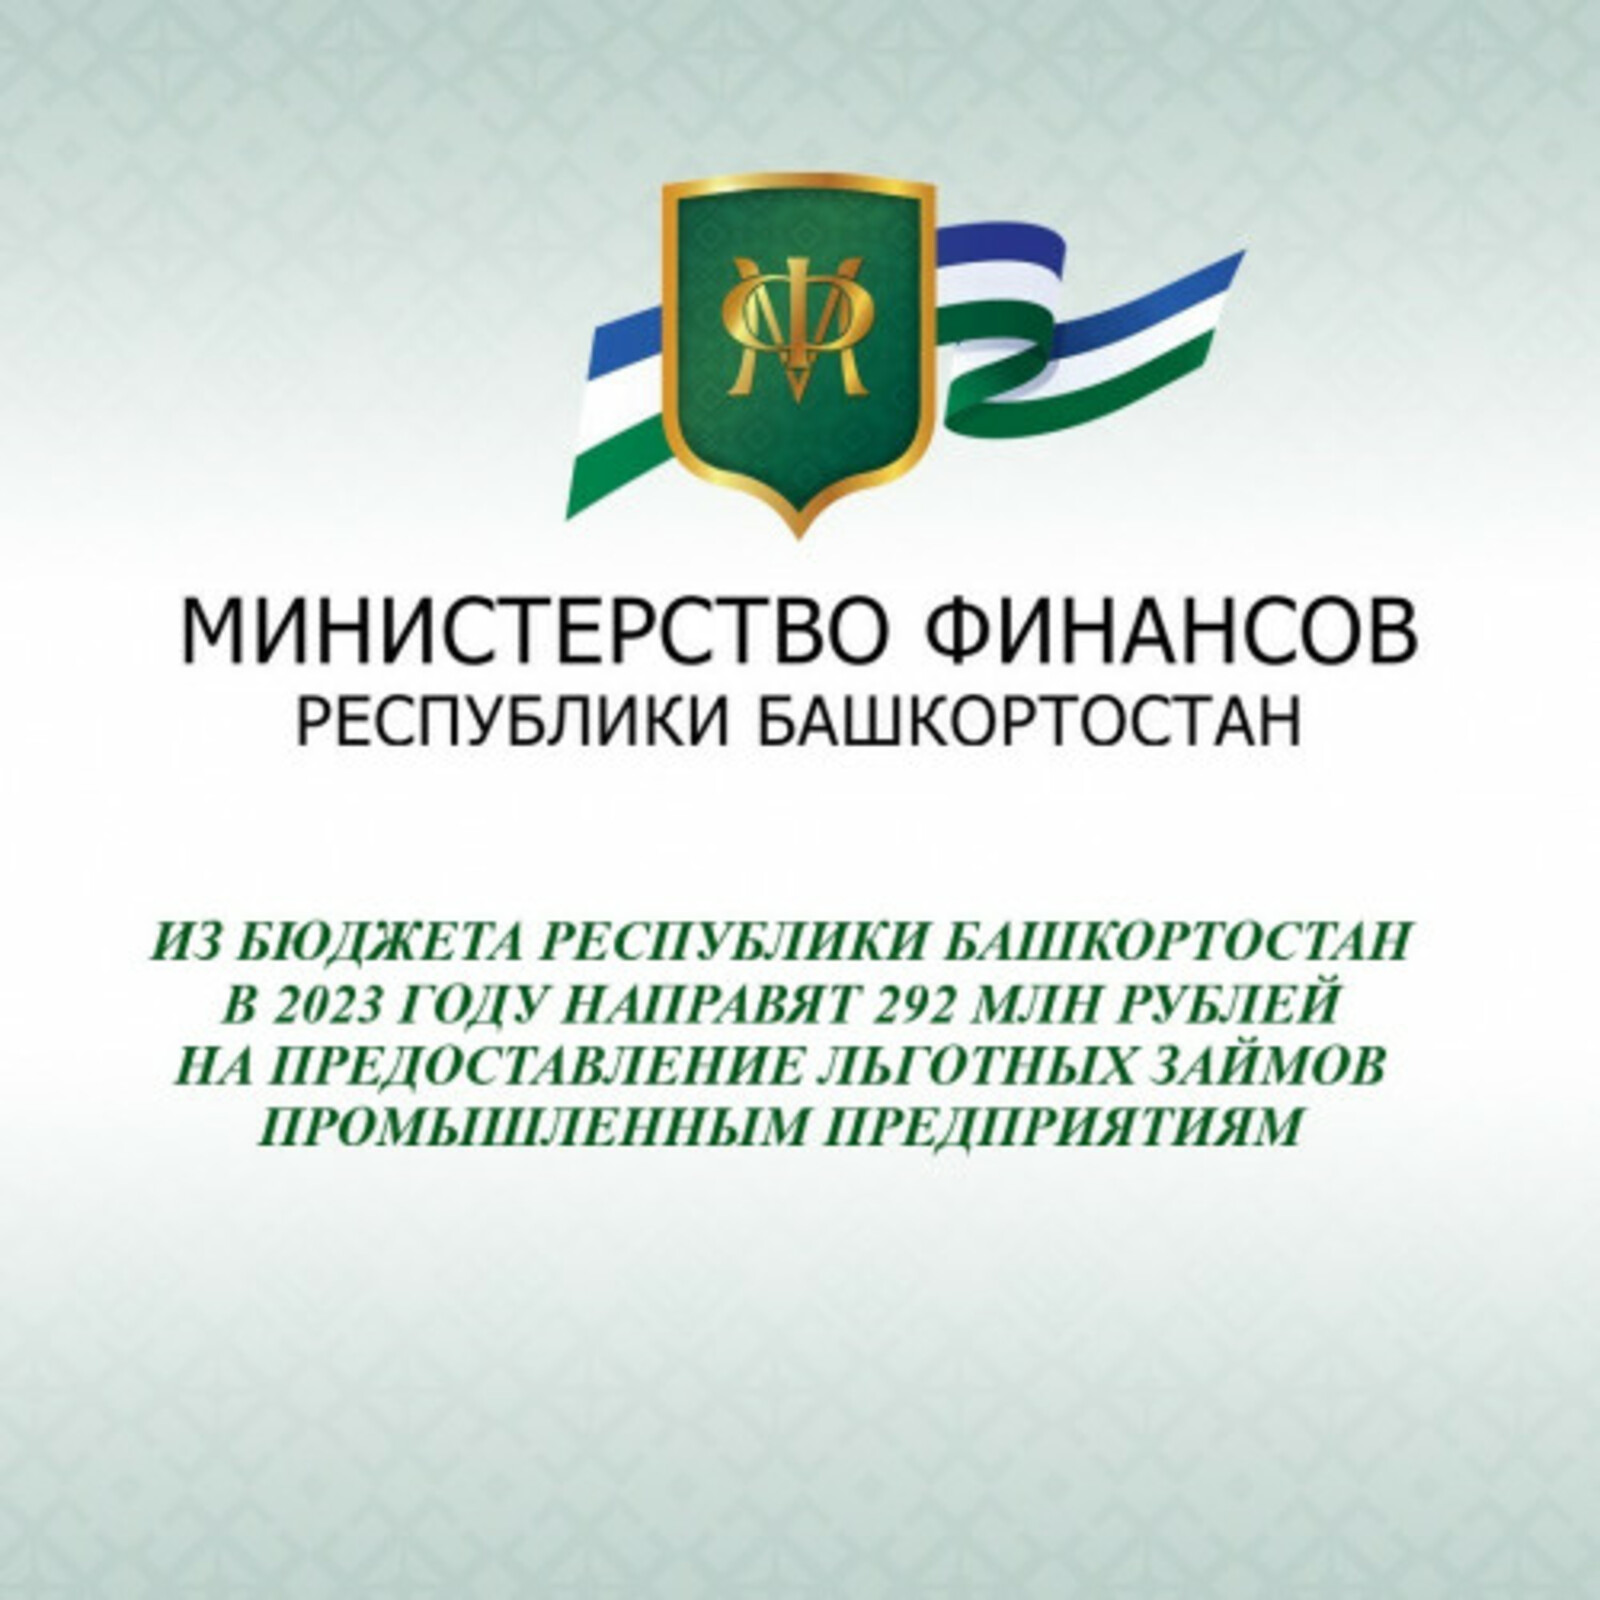 Башкирия направят 292 миллиона рублей на льготные займы промышленным предприятиям